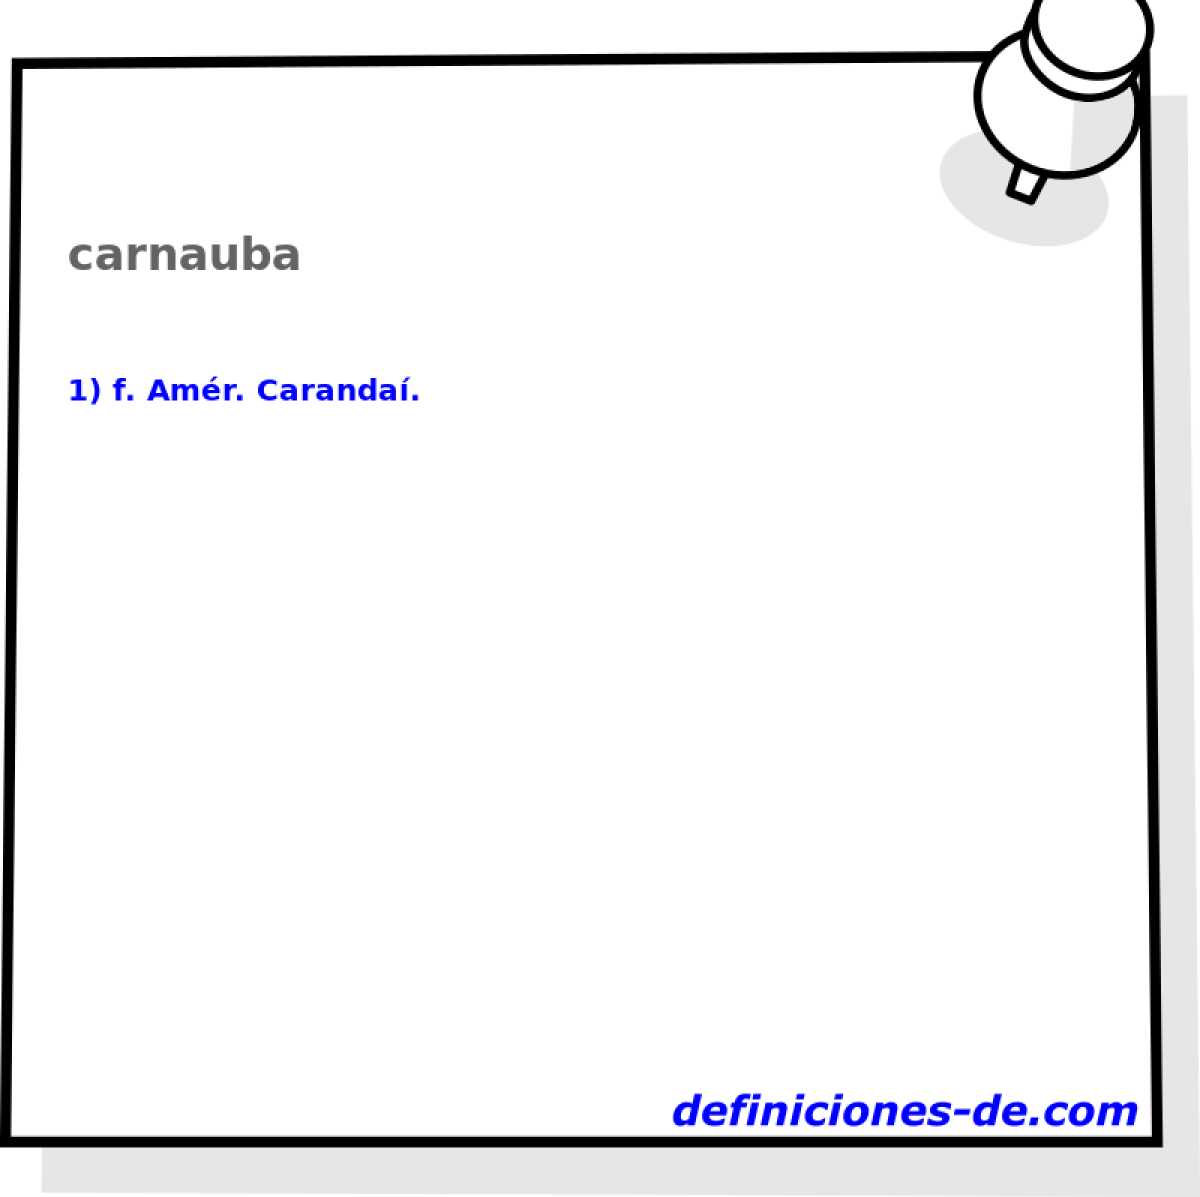 carnauba 